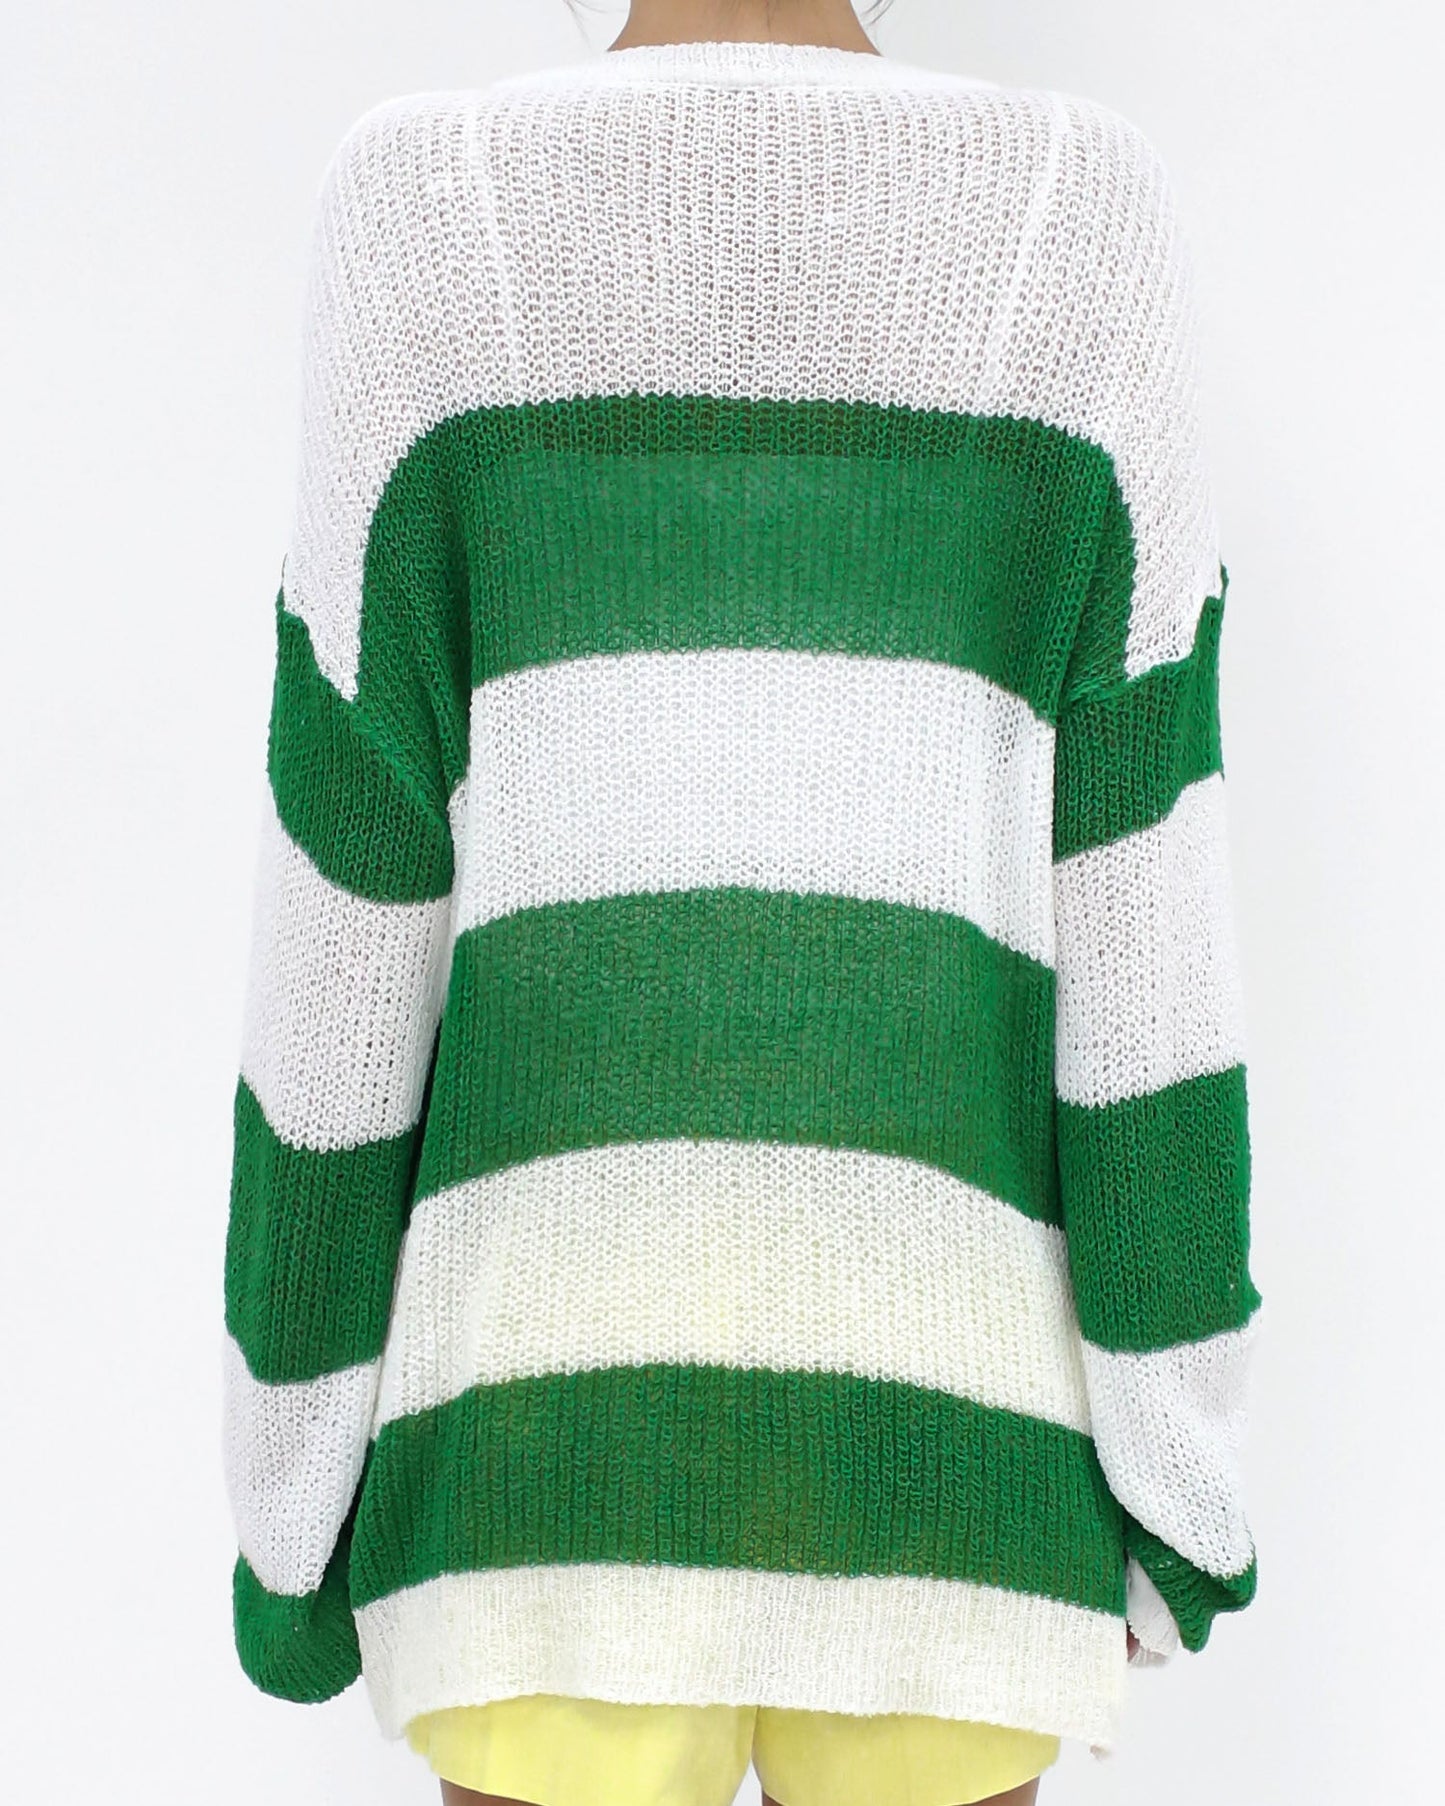 象牙色和綠色條紋夏季細針織上衣*預購*